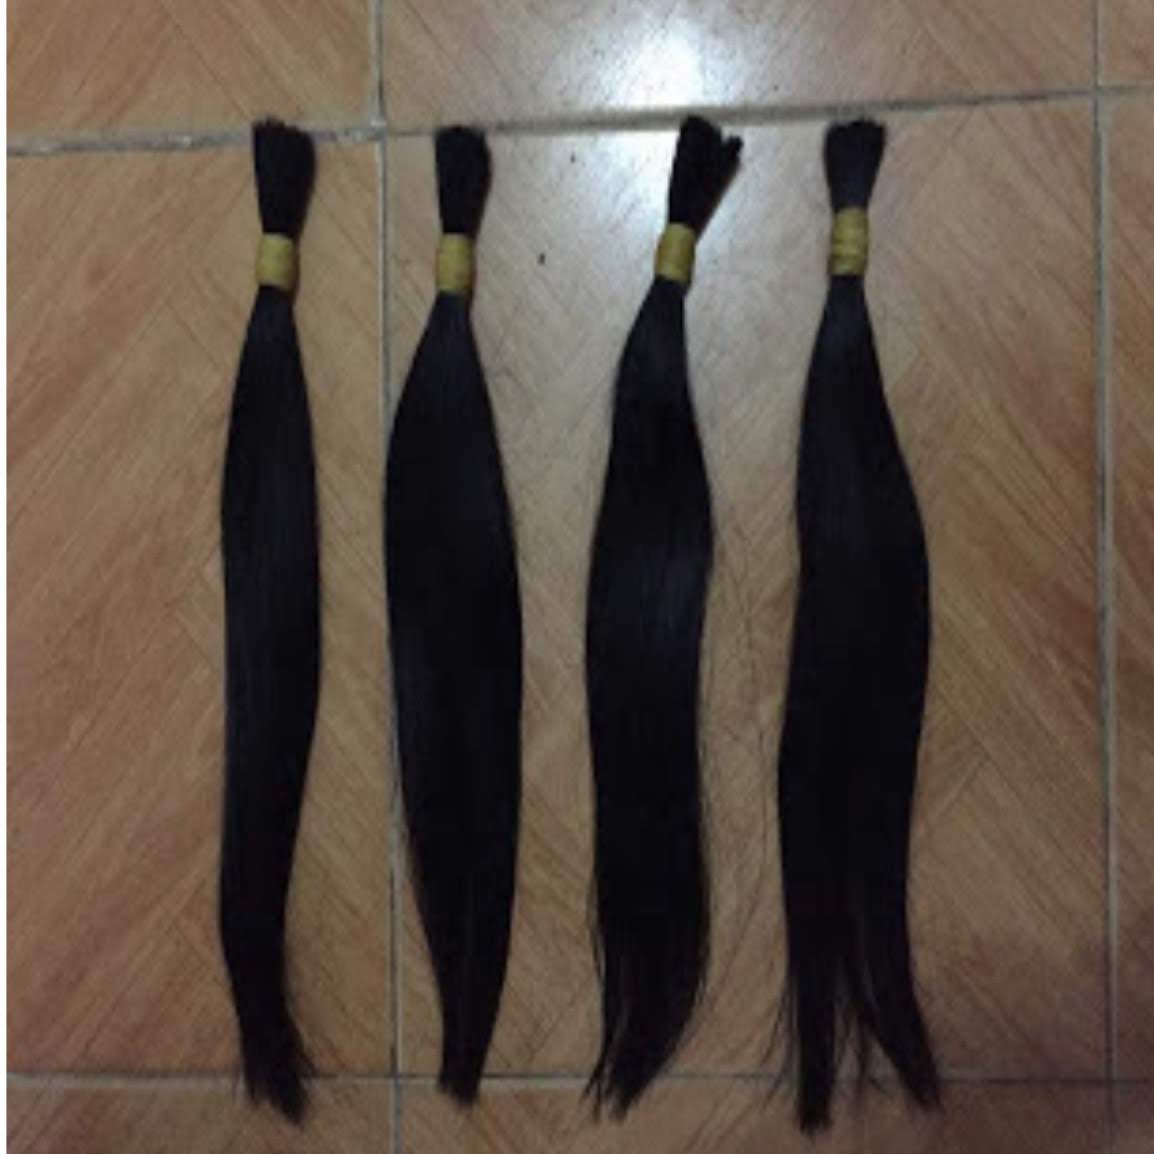  Tóc nối dài 40cm, giá tóc nối rẻ chất lượng cao cho bạn